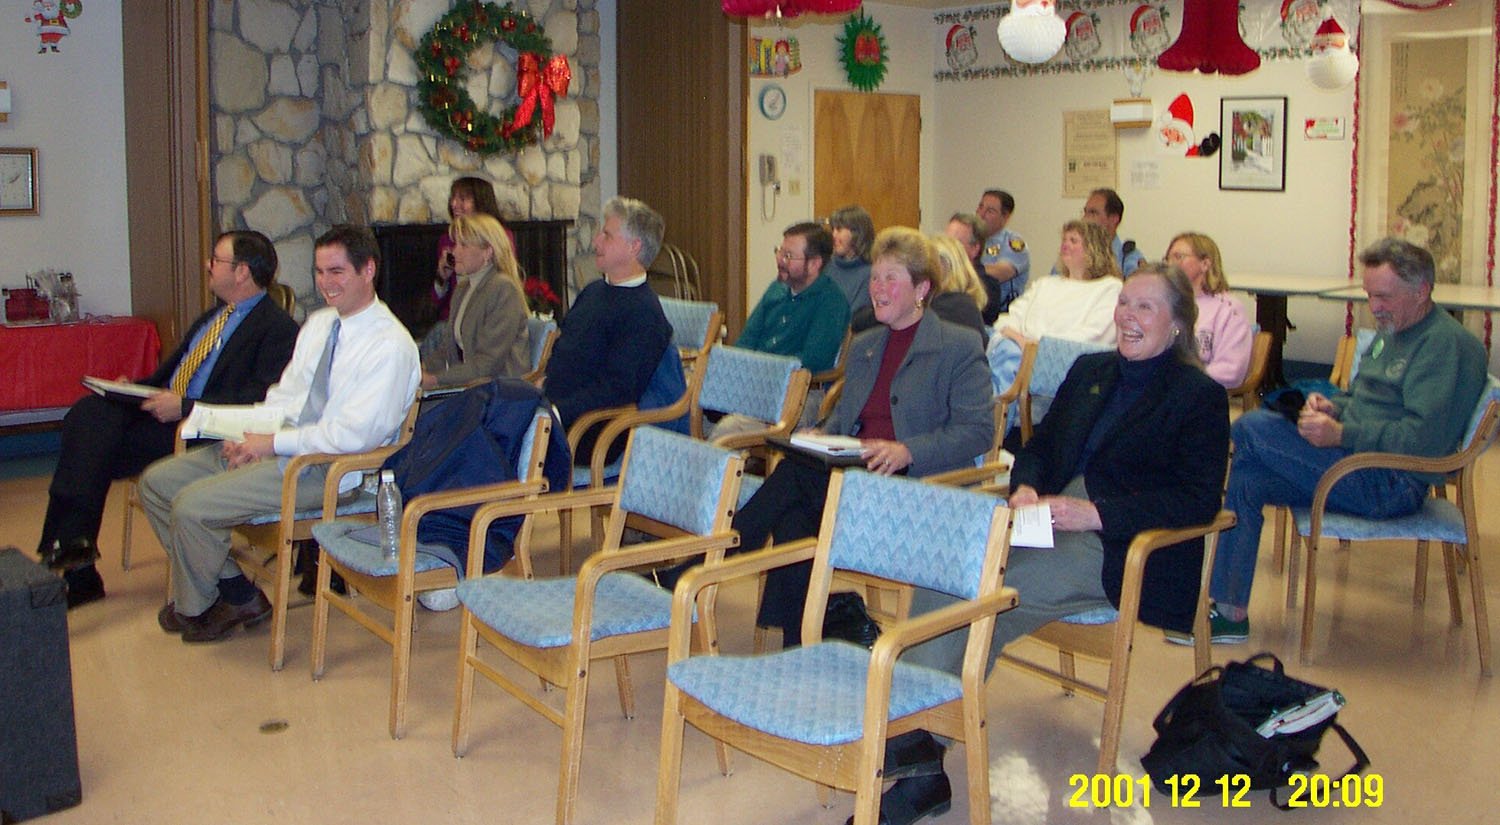 2001-12-12-mcc_audience.JPG